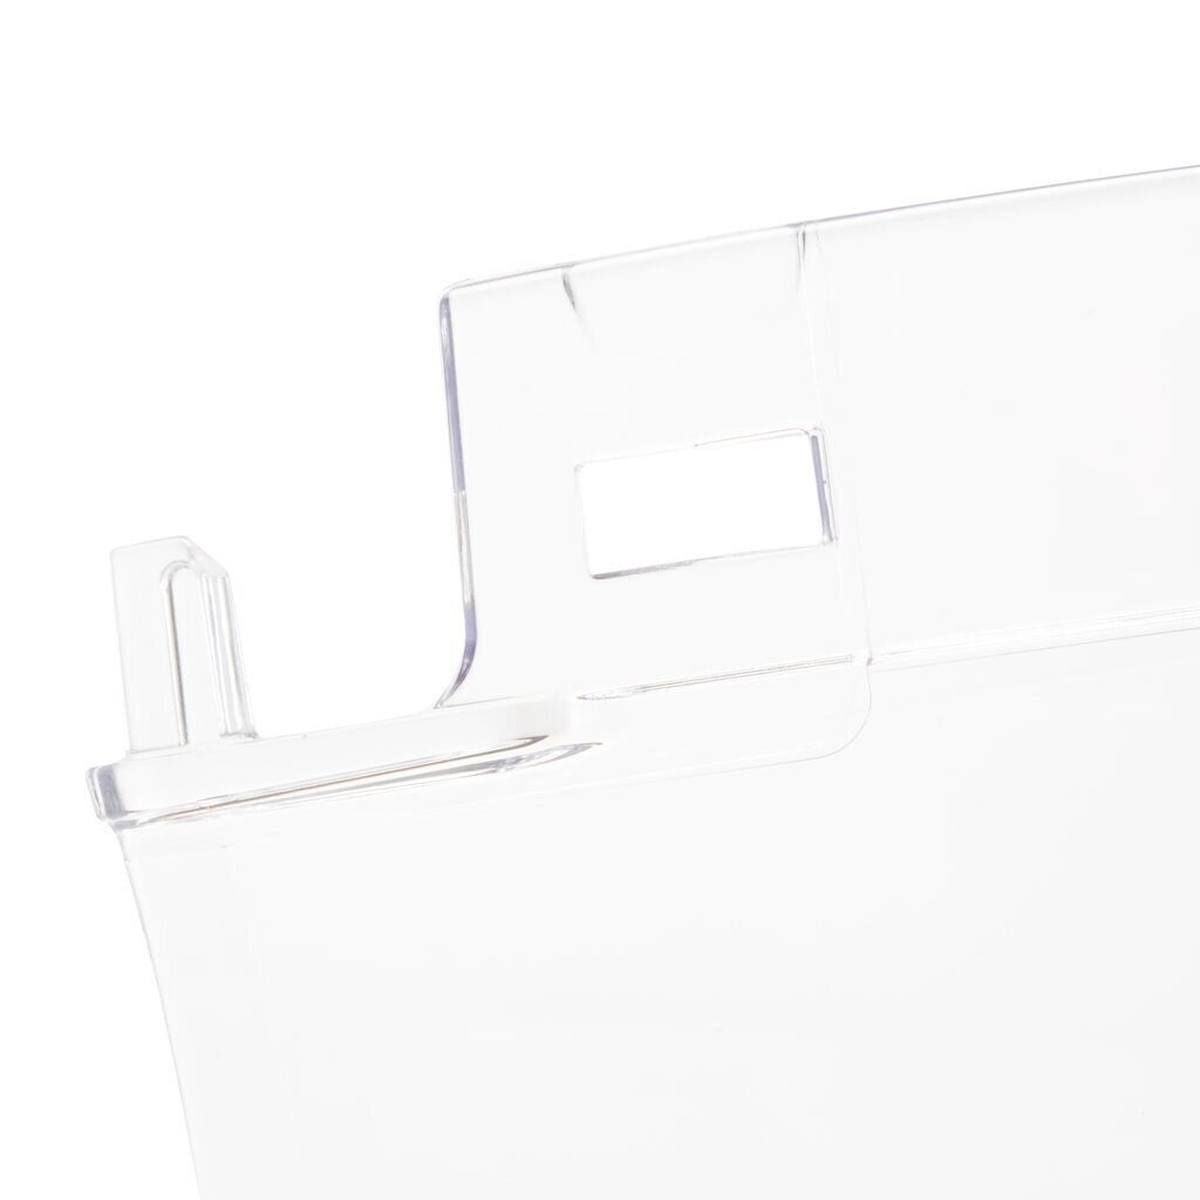 Visiera trasparente 3M 5F-11 in policarbonato trasparente estremamente resistente agli urti spessore: 1,5 mm, peso: 138 g disponibile separatamente: supporto V5 per caschi di sicurezza 3M